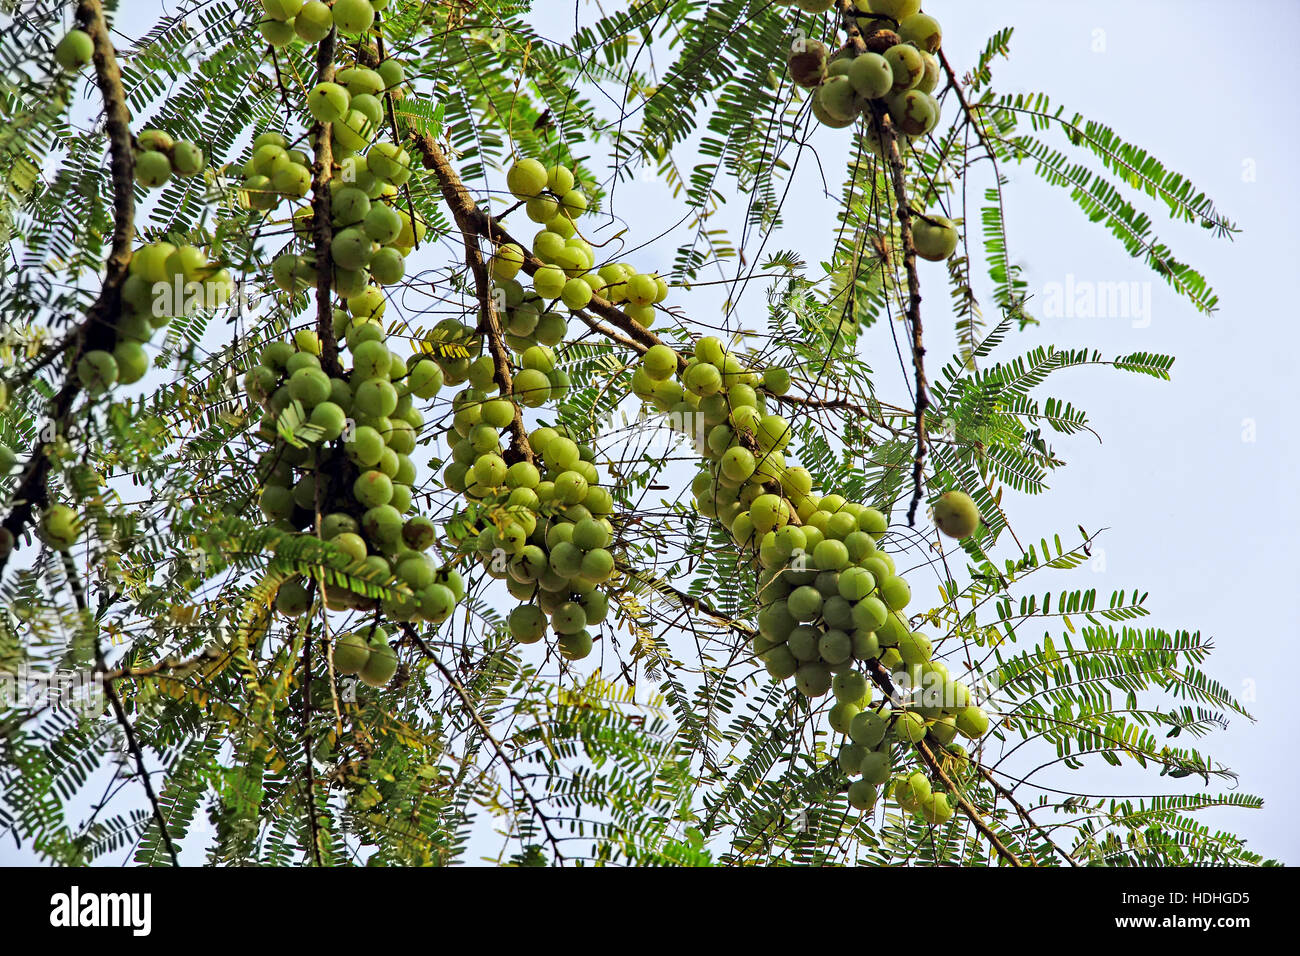 Grupo de indios de uchuva (Phyllanthus emblica) en el árbol. Una parte esencial de la medicina ayurveda tradicional de la India. Foto de stock